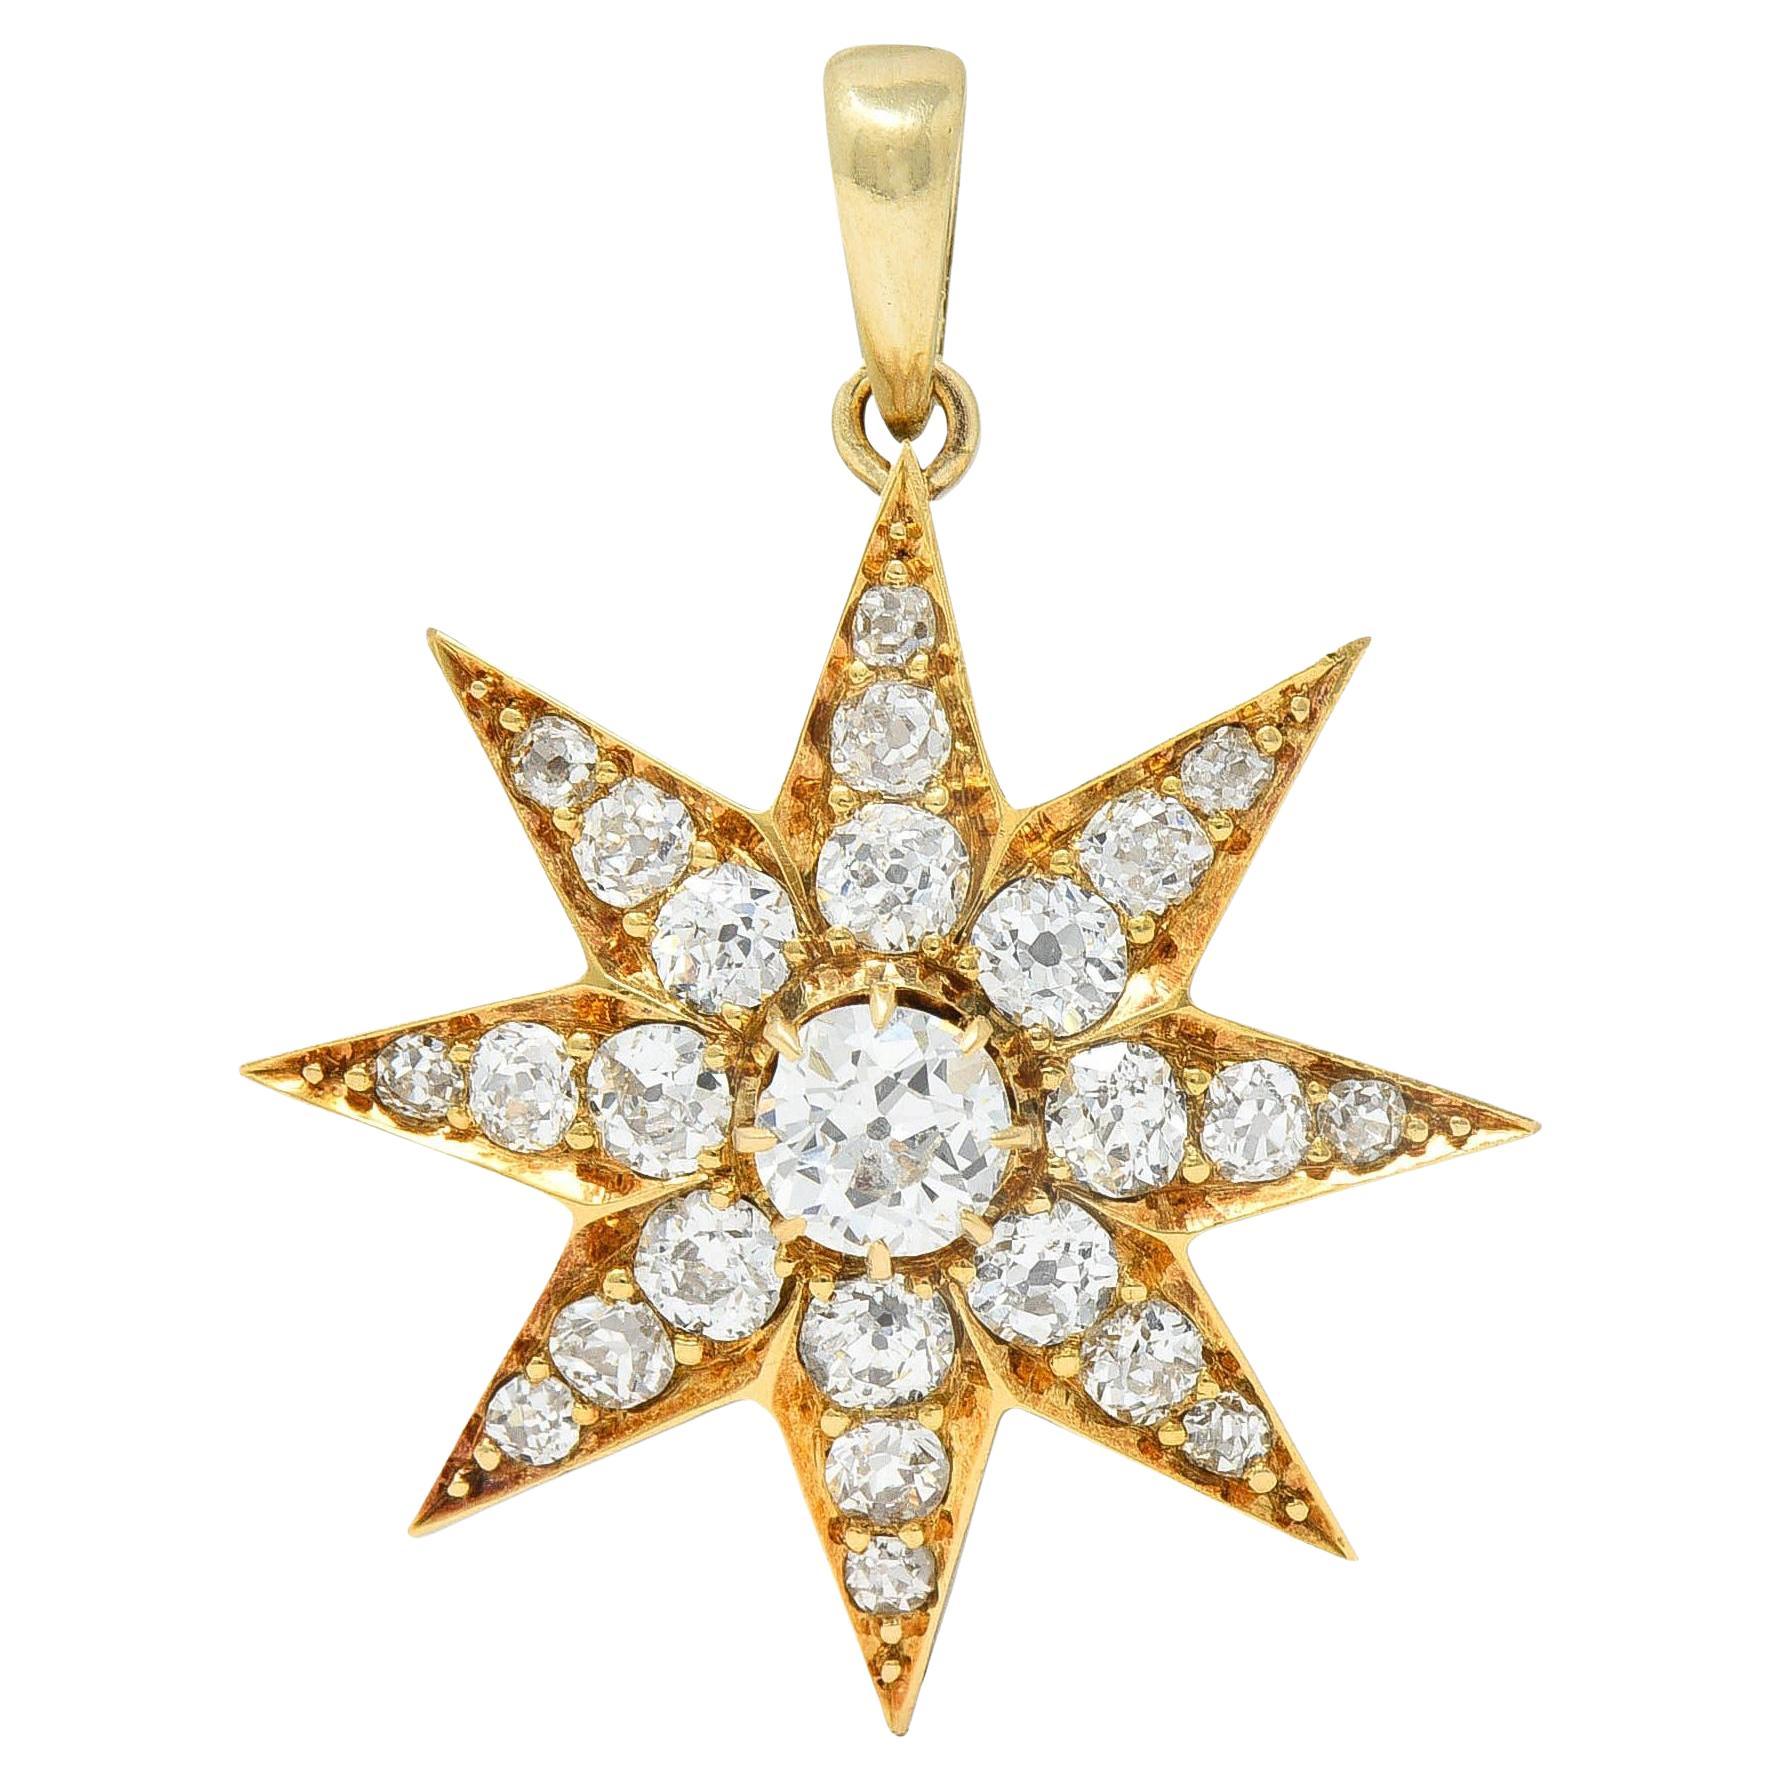 Pendentif de deuil victorien ancien étoile de cheveux étoilé en or 18 carats avec diamants 1,22 carat poids total